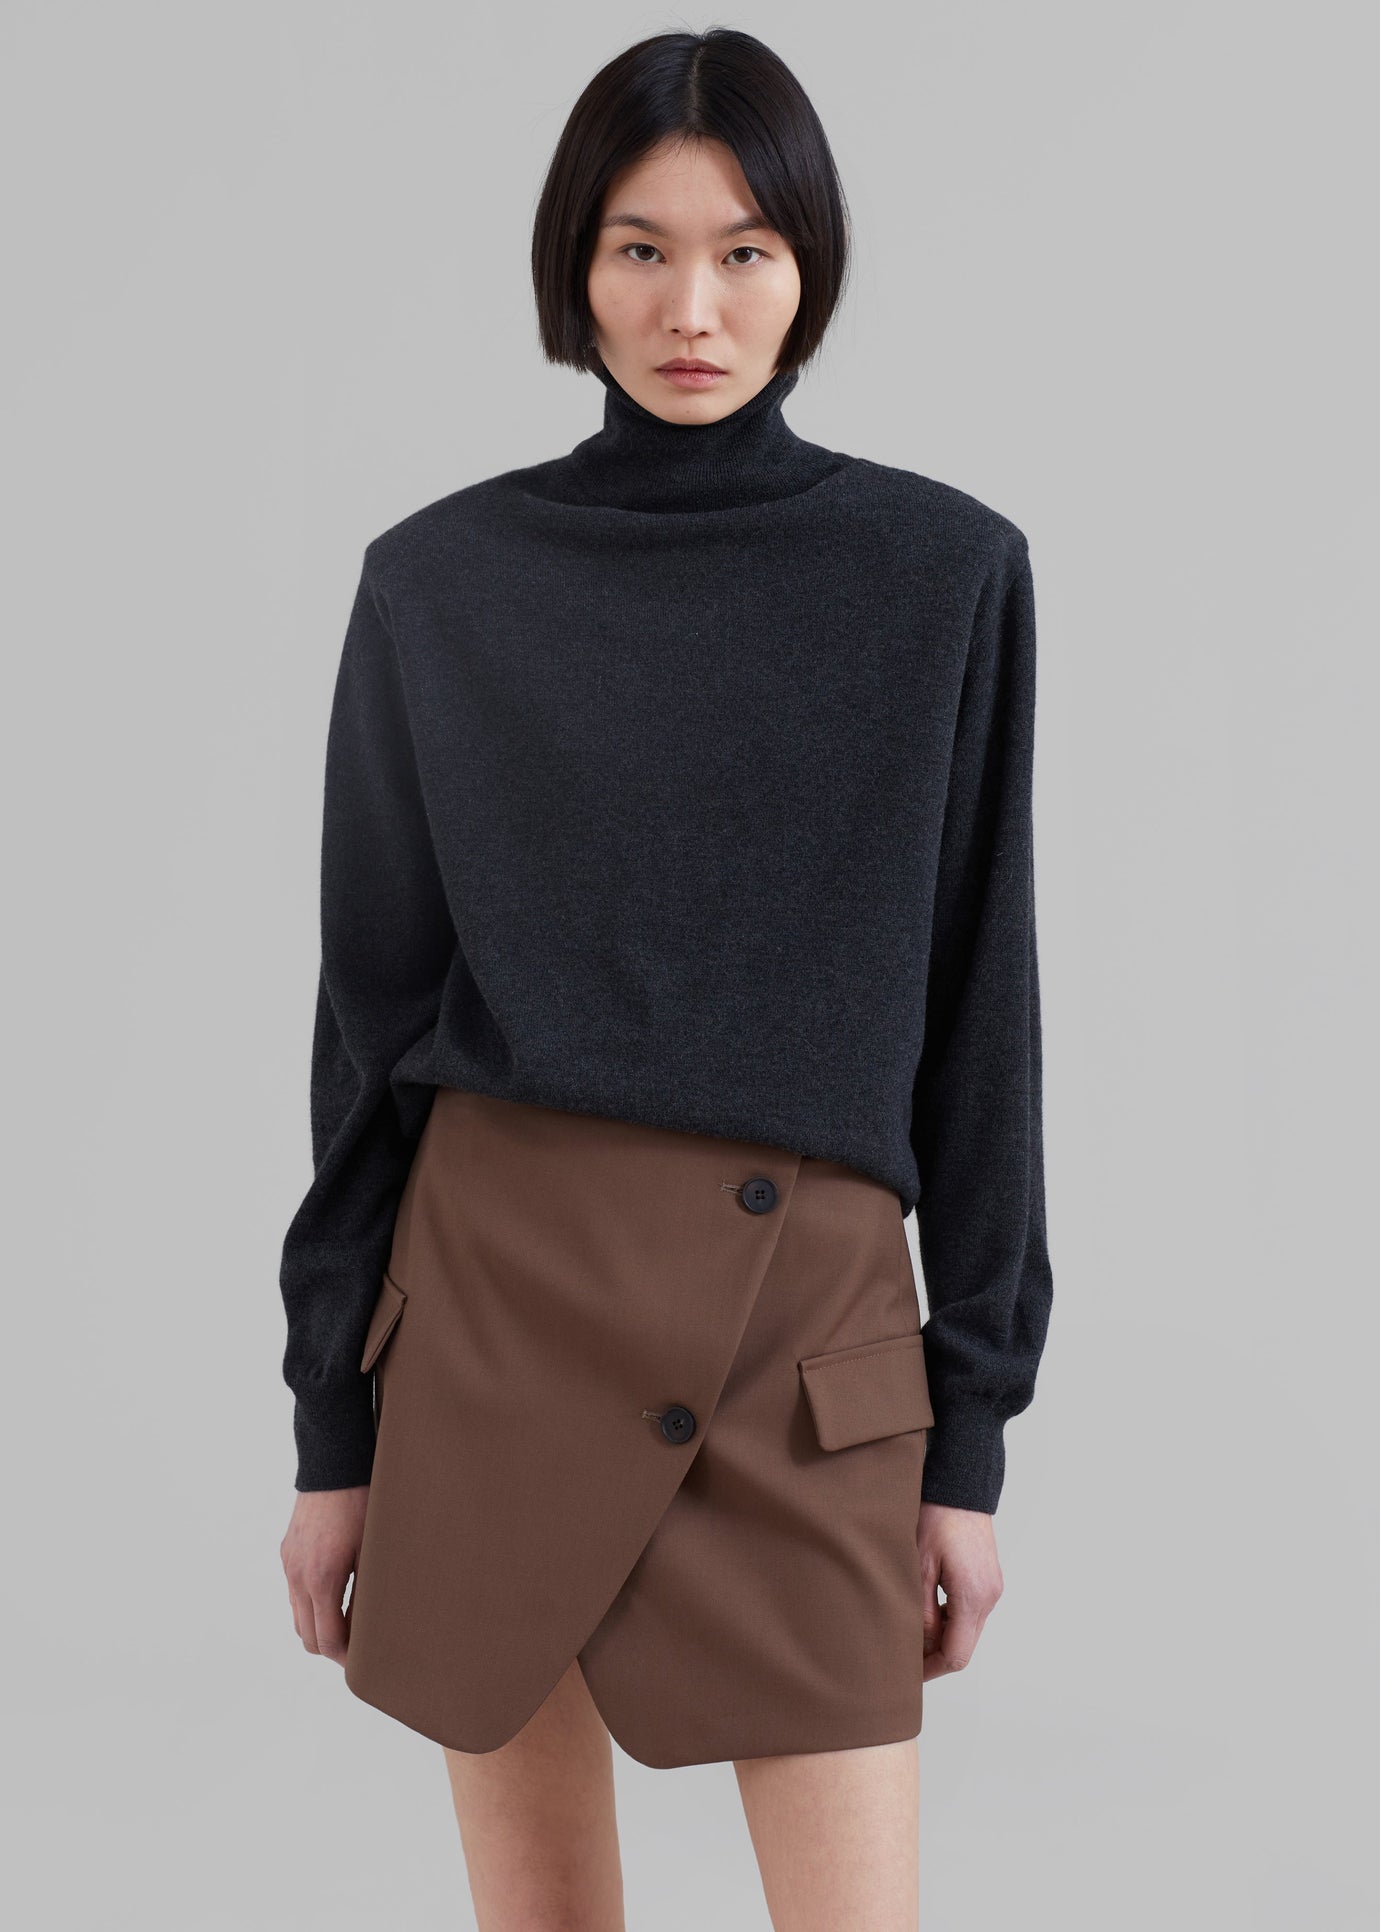 Camsel Cross Skirt - Brown